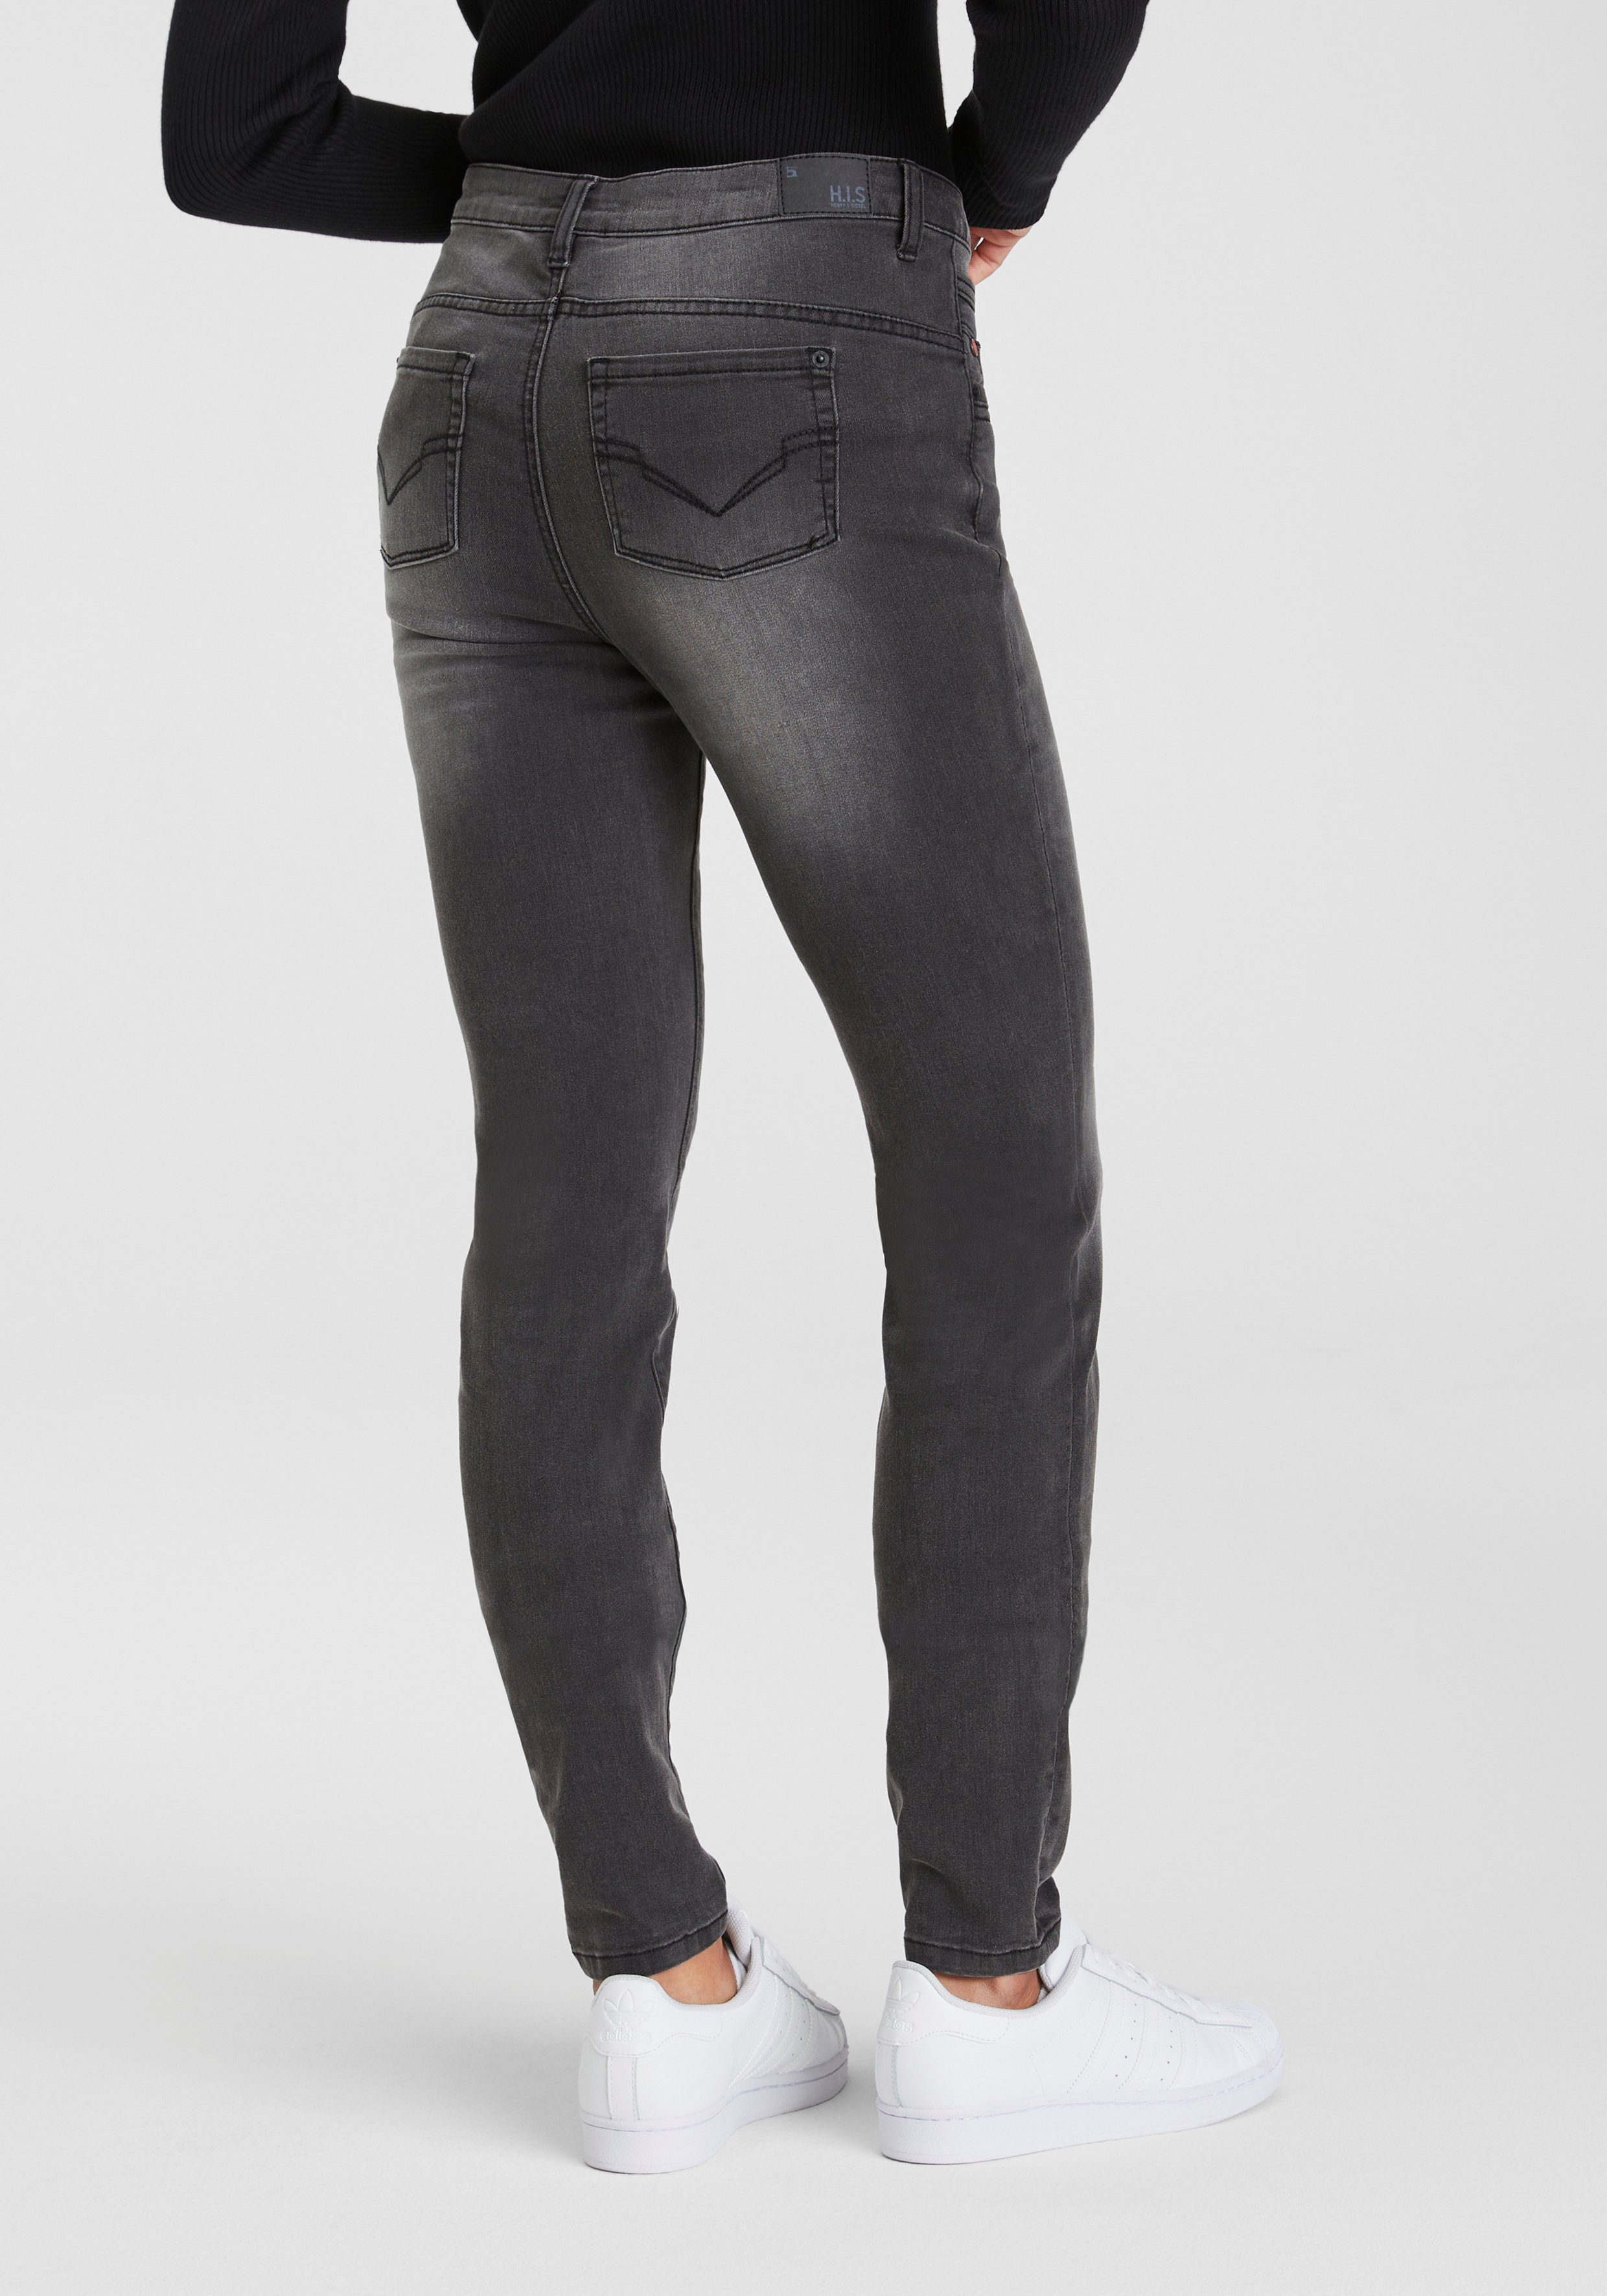 H.I.S 5-Pocket-Jeans grey Ozon djunaHS dark wassersparende ökologische, Produktion durch Wash